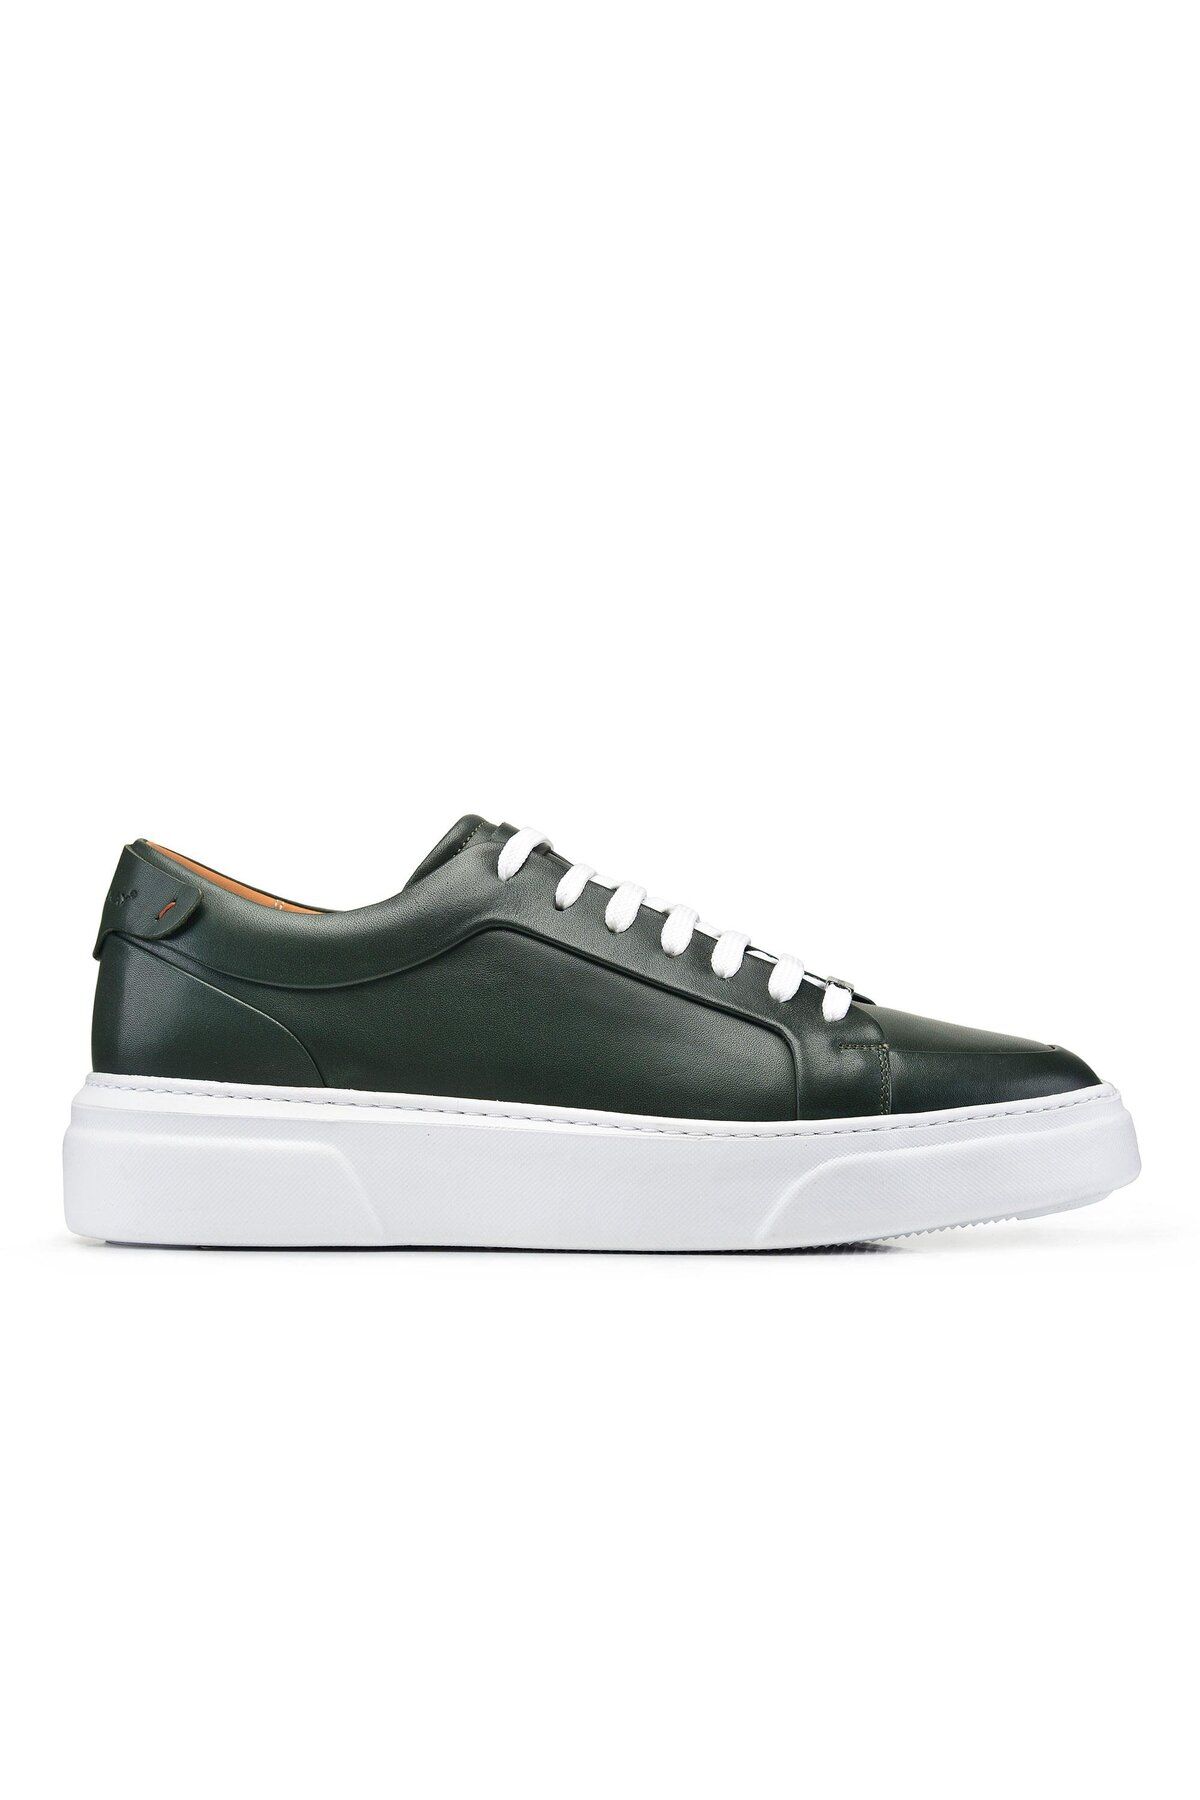 Nevzat Onay Yeşil Bağcıklı Sneaker Erkek Ayakkabı -92114-